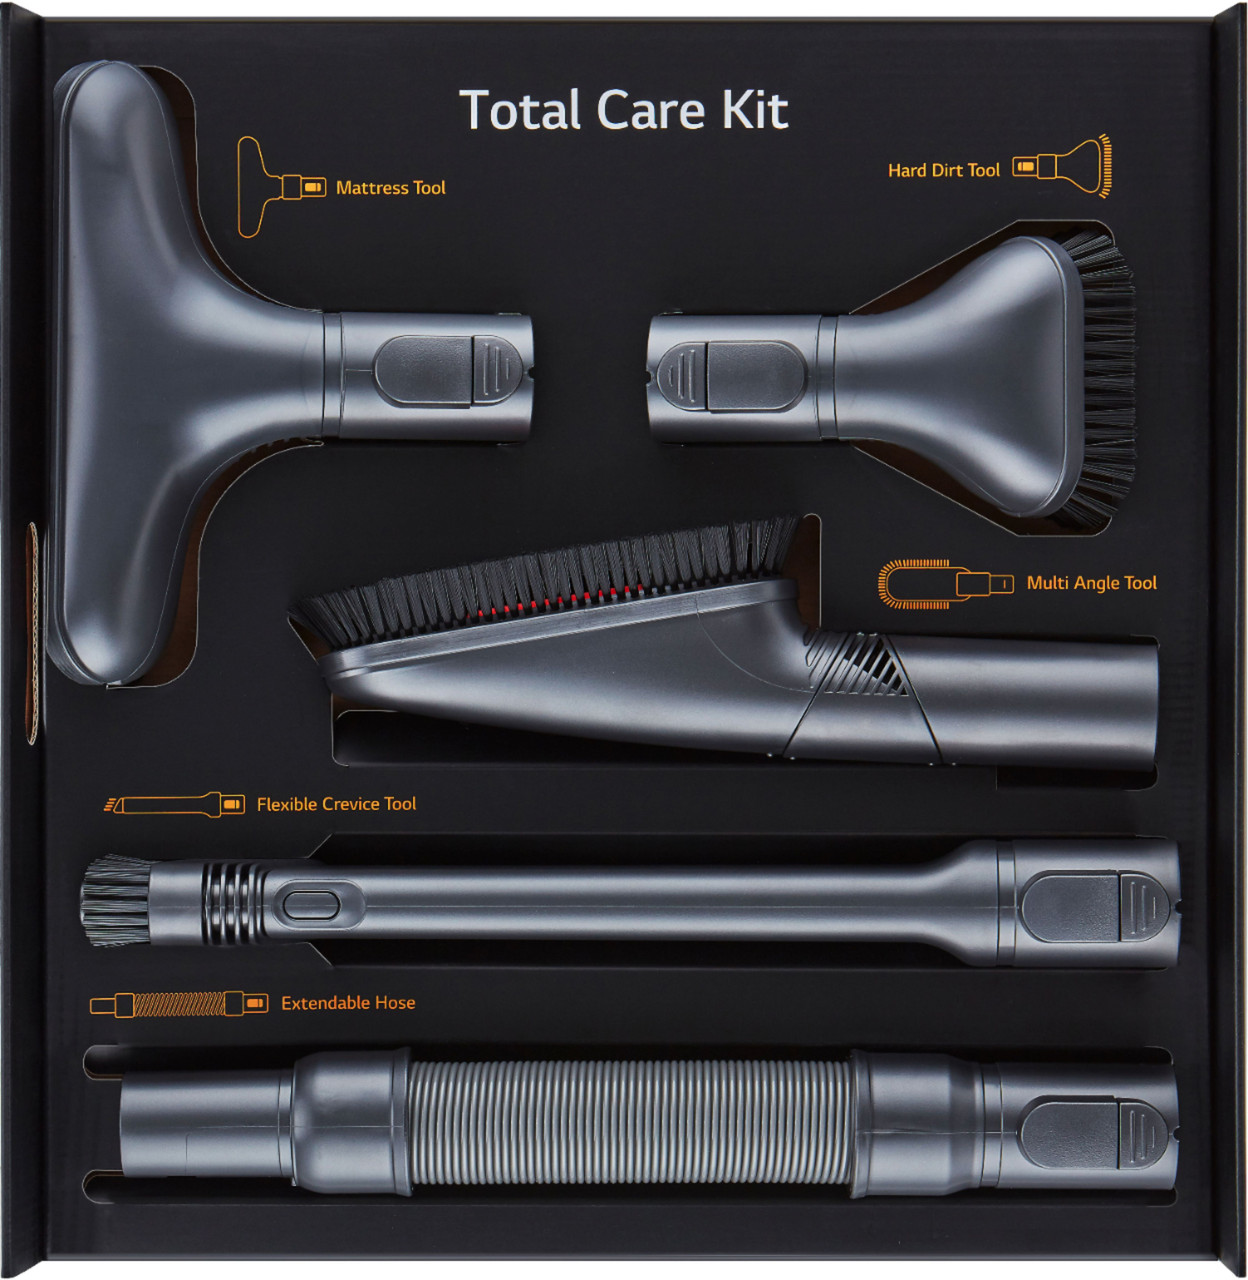 LG - A9 Total Care Kit - Black